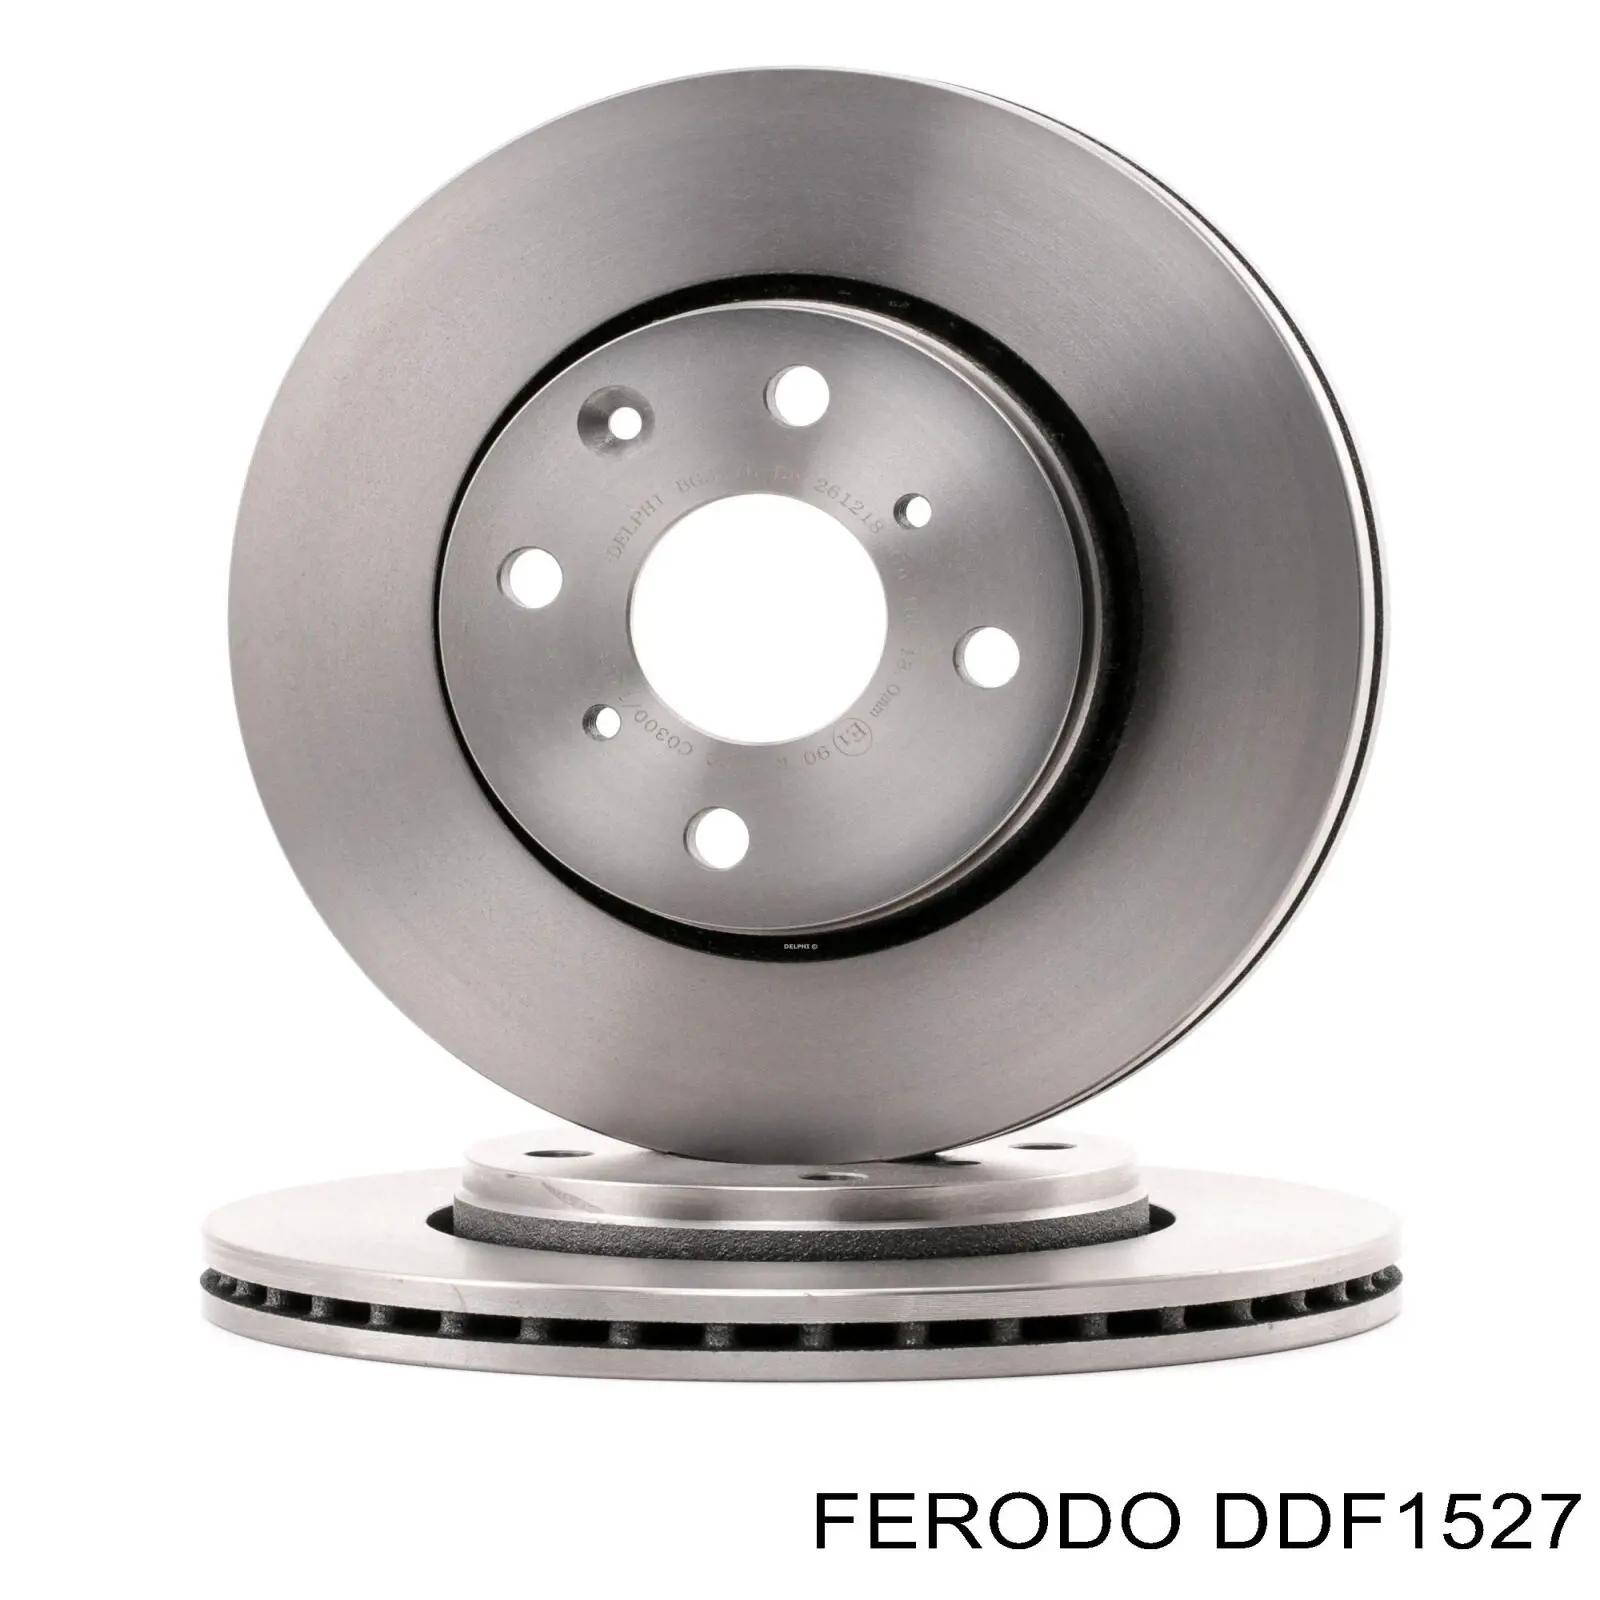 DDF1527 Ferodo передние тормозные диски